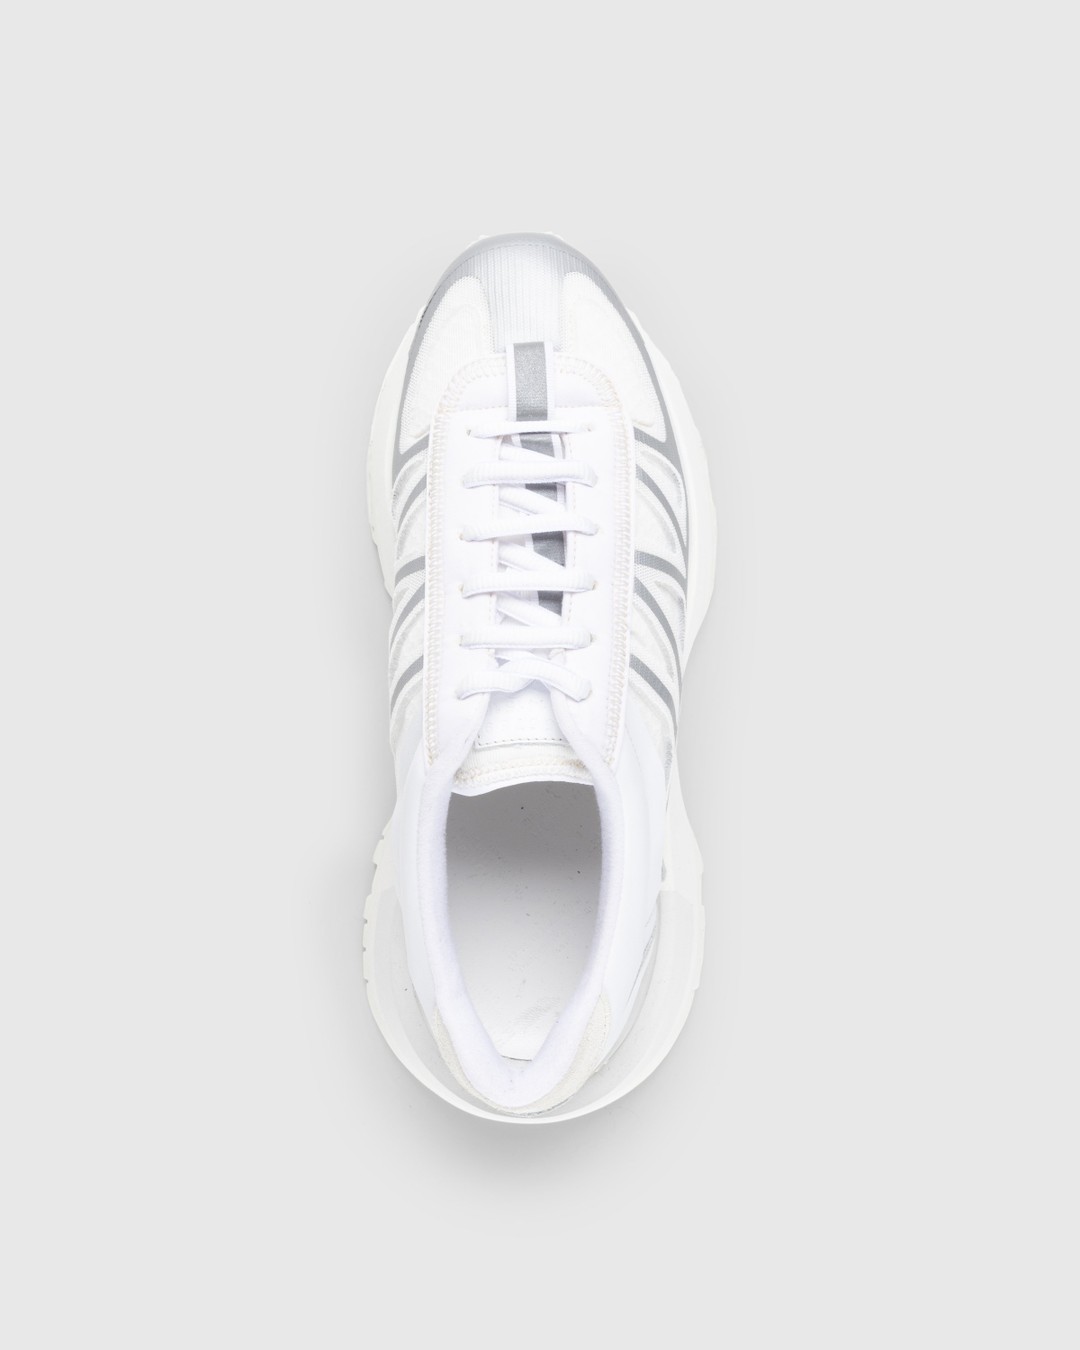 Maison Margiela – 50/50 Sneakers White - Sneakers - White - Image 5